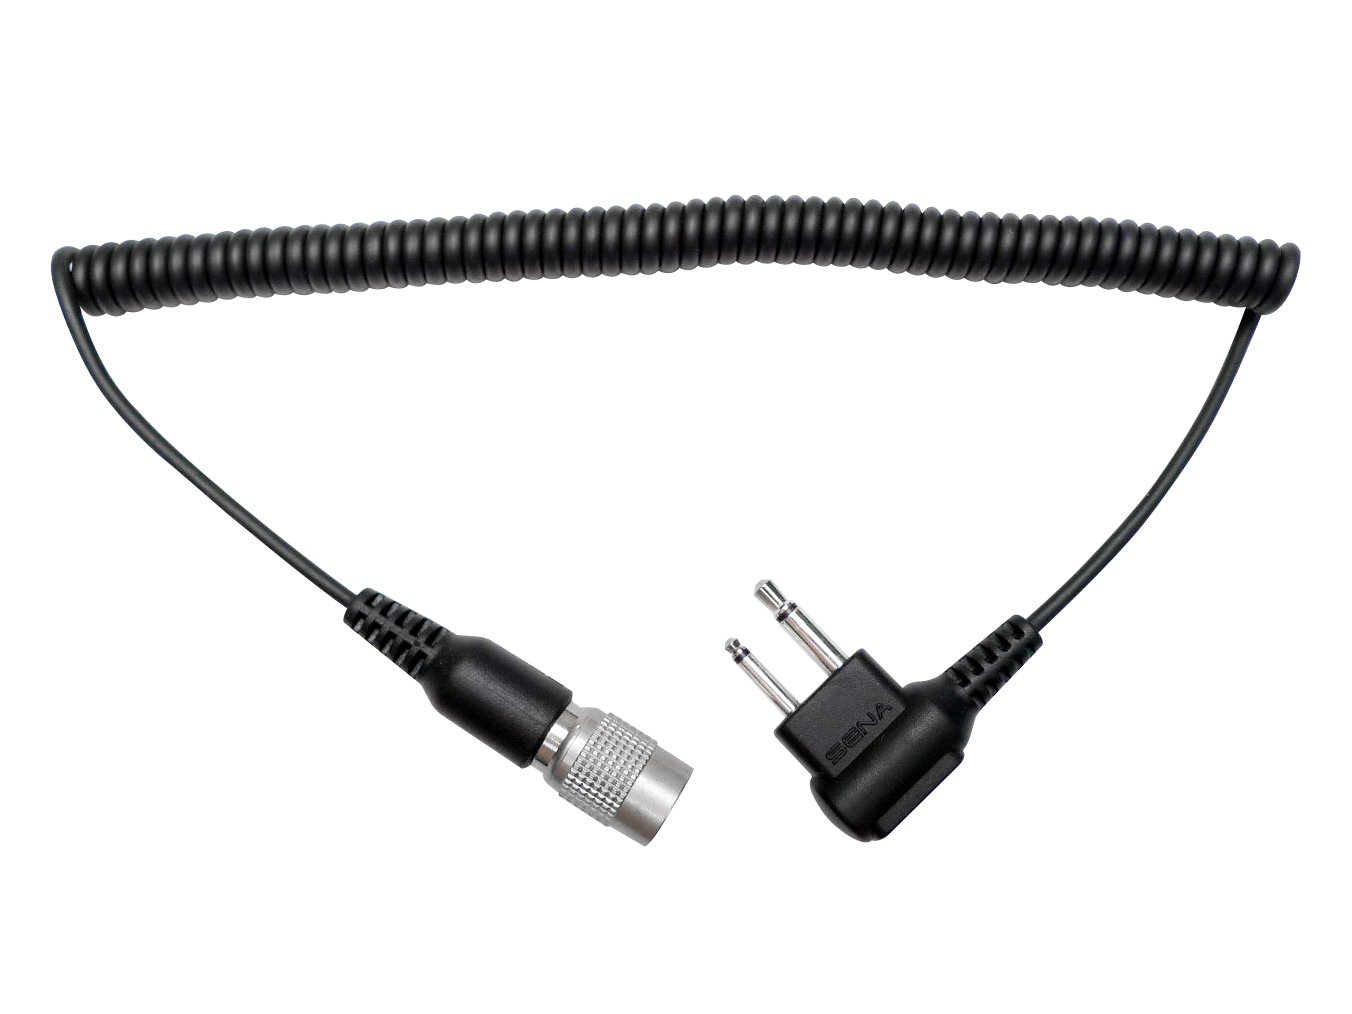 2-way Radio Kabel für Motorola Twin-pin Connector von Sena